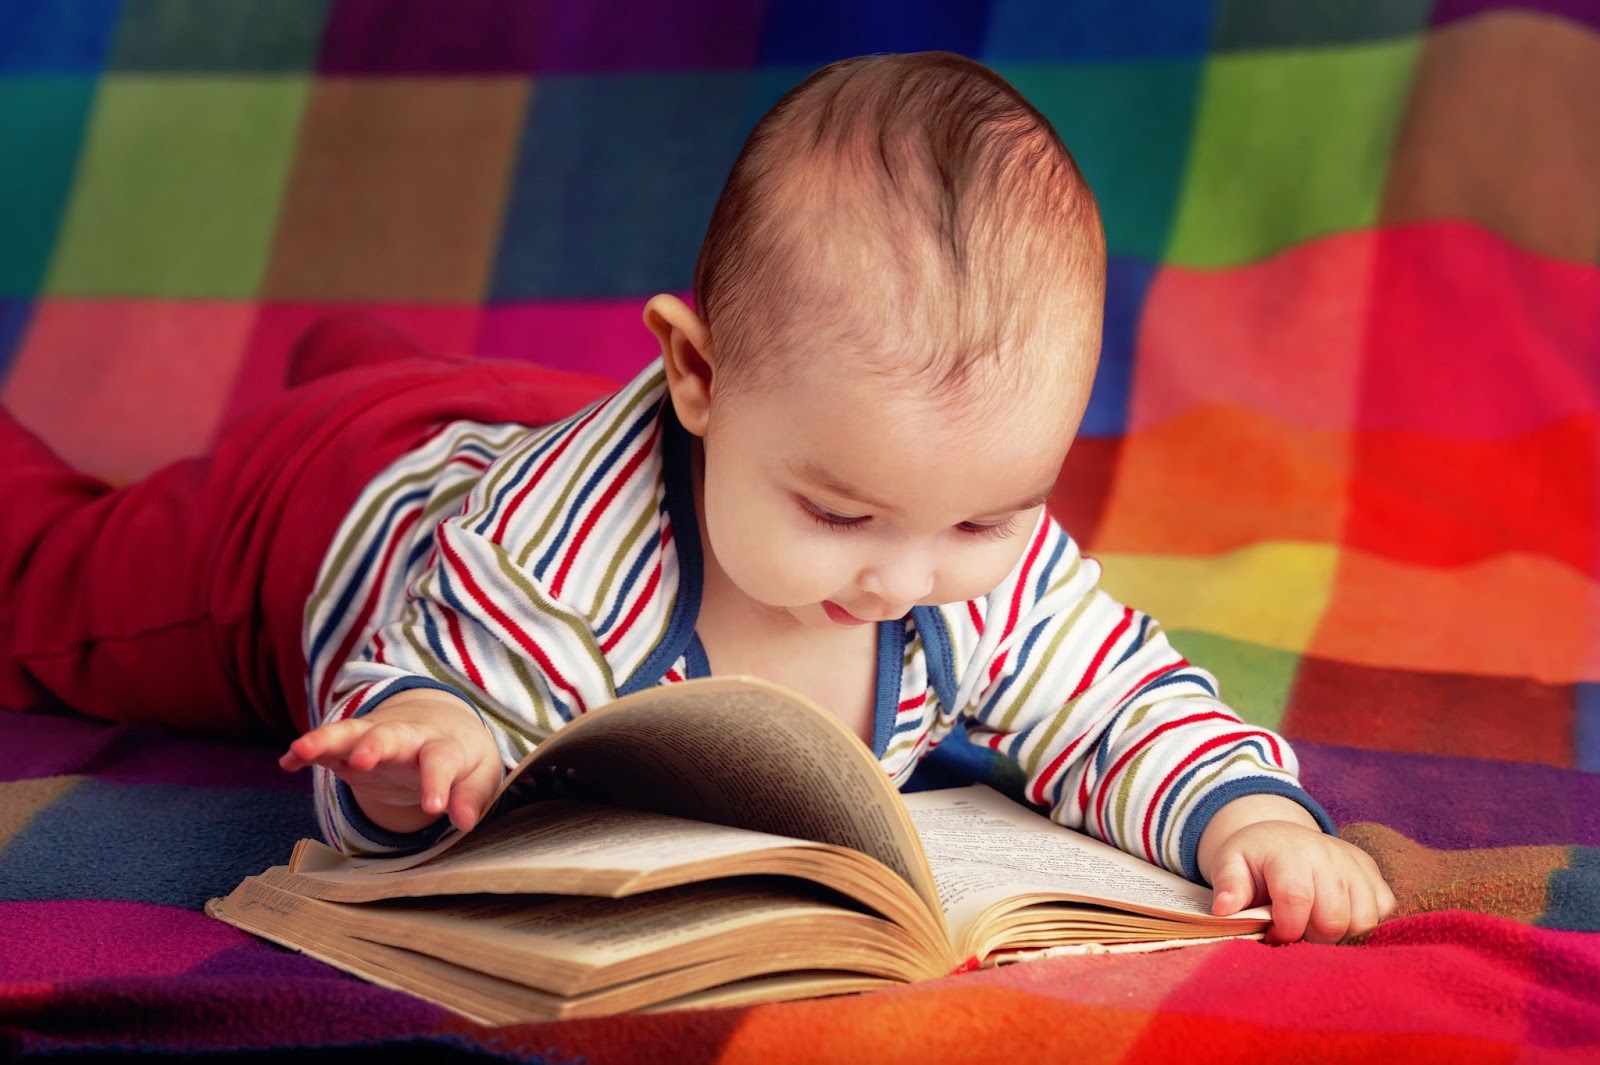 Kumpulan Foto Bayi Bayi Lucu Banget Sedang Membaca Buku 2016 Si